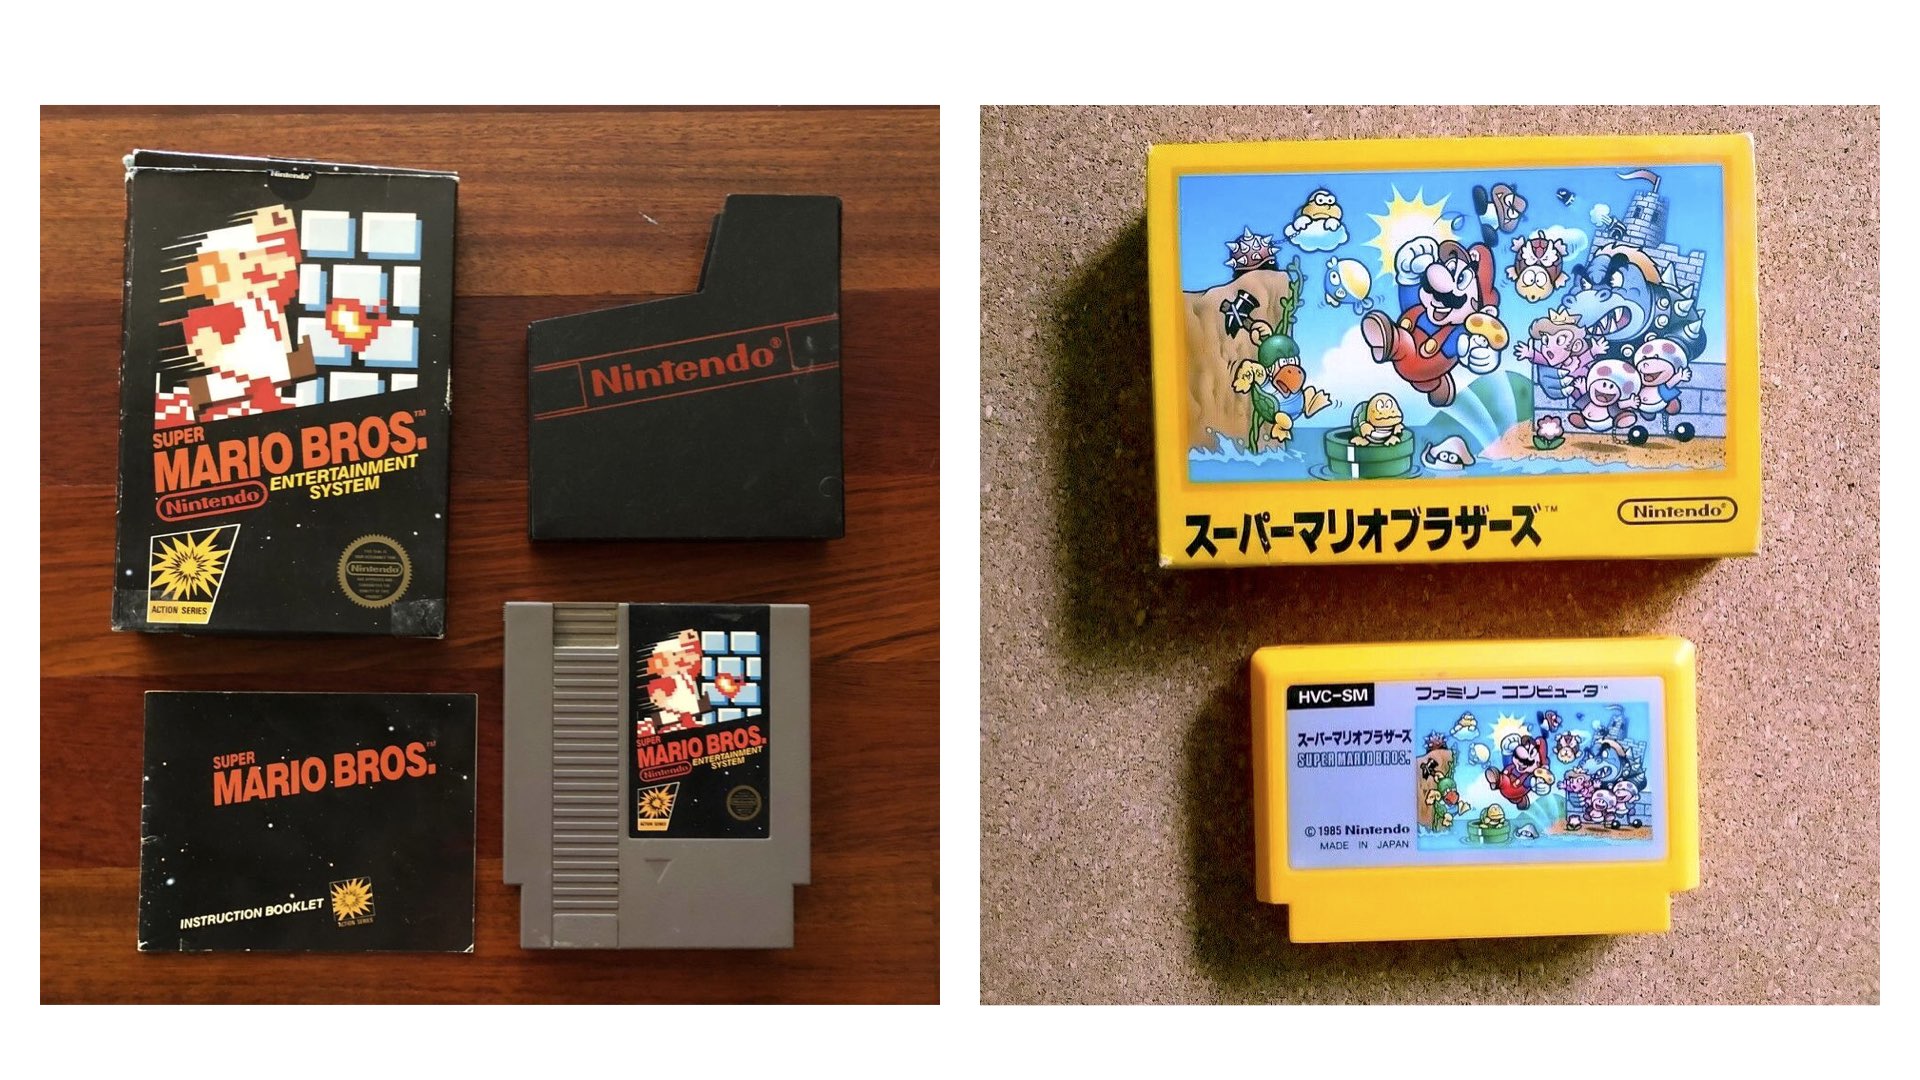 Super Mario Bros. NES and Famicom